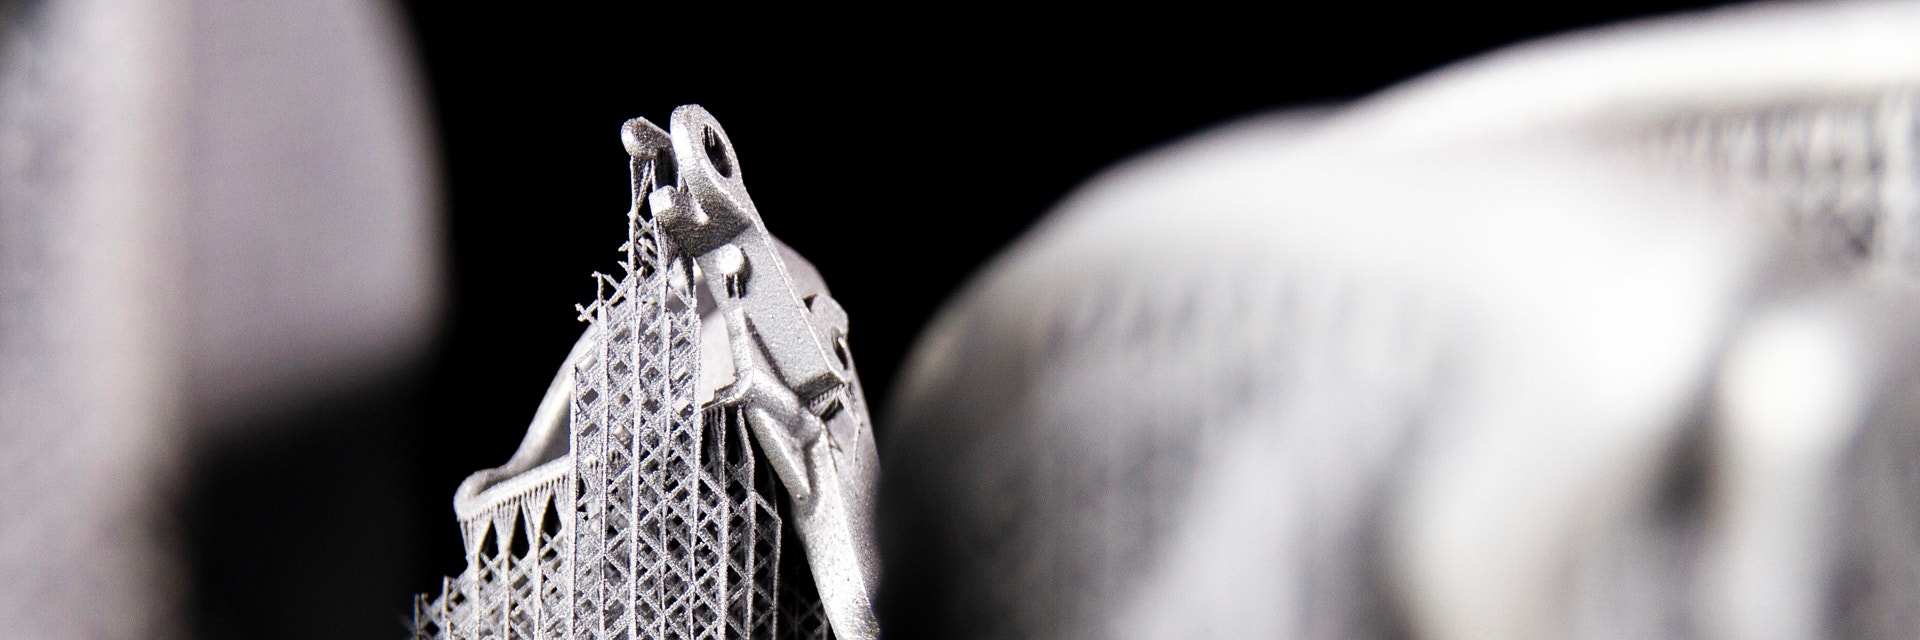 Nahaufnahme des 3D-gedruckten Metallbauteils mit Stützstrukturen